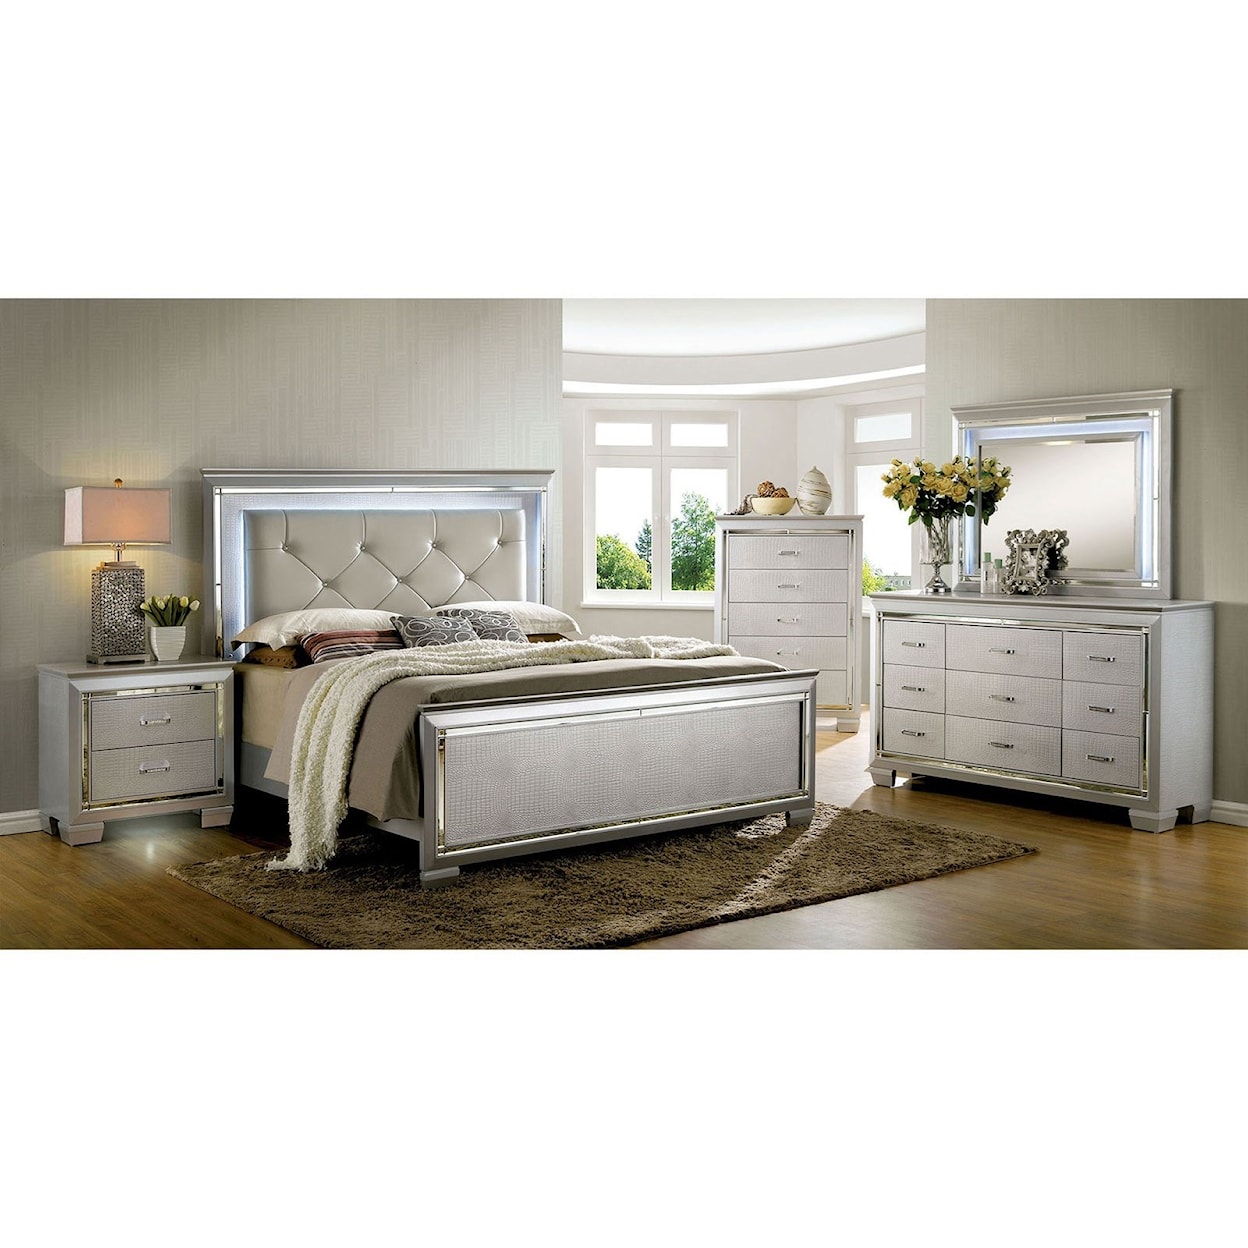 Furniture of America Bellanova Queen Bed